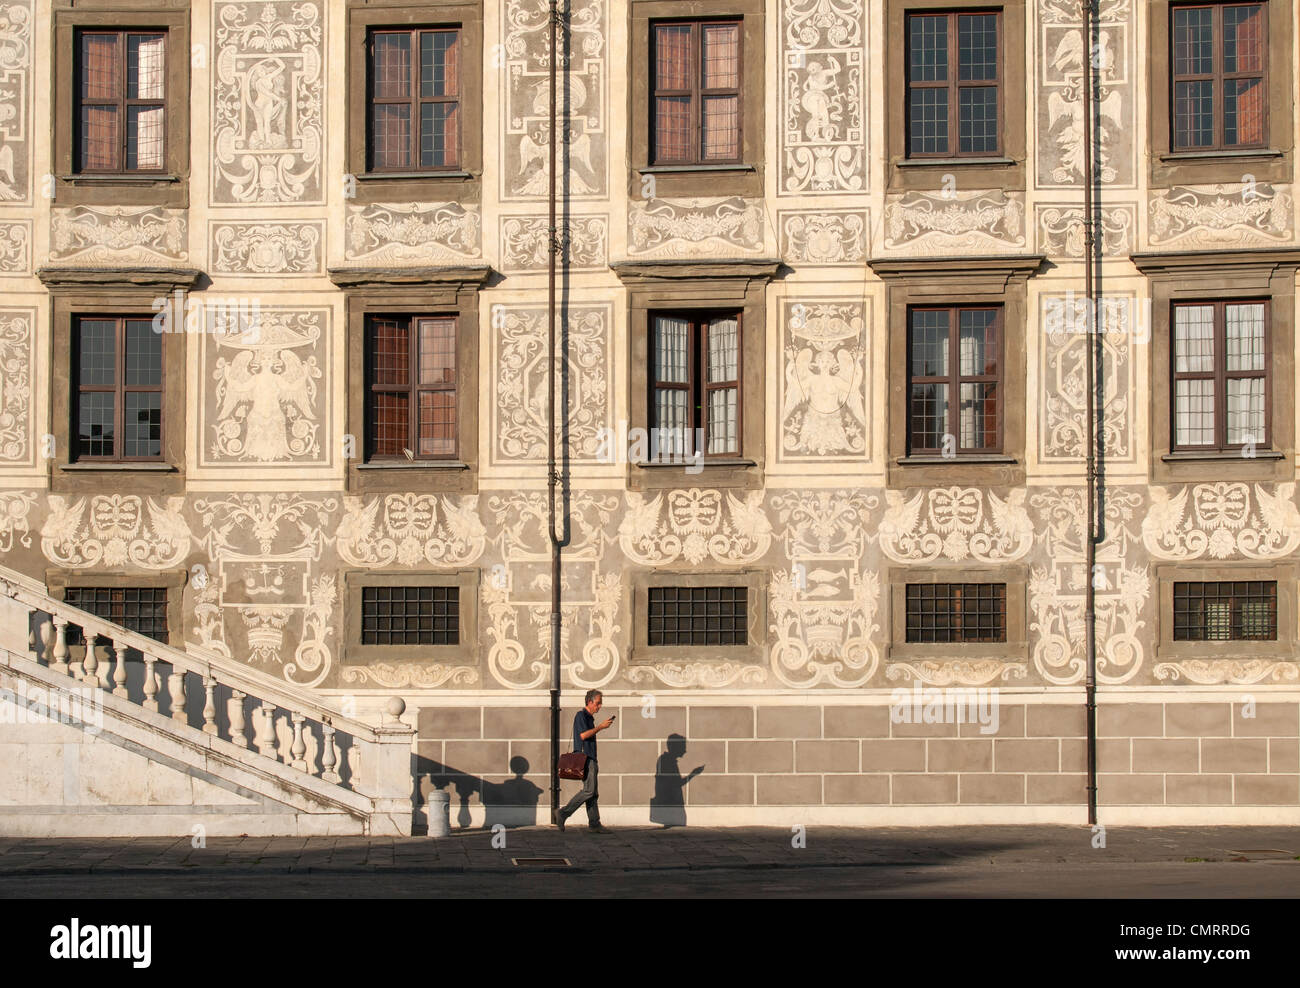 Sgraffiti Facade of Palace della Carovana (Palazzo dei Cavalieri), Scuola Normale Superiore in Knights' Square, Pisa, Italy Stock Photo